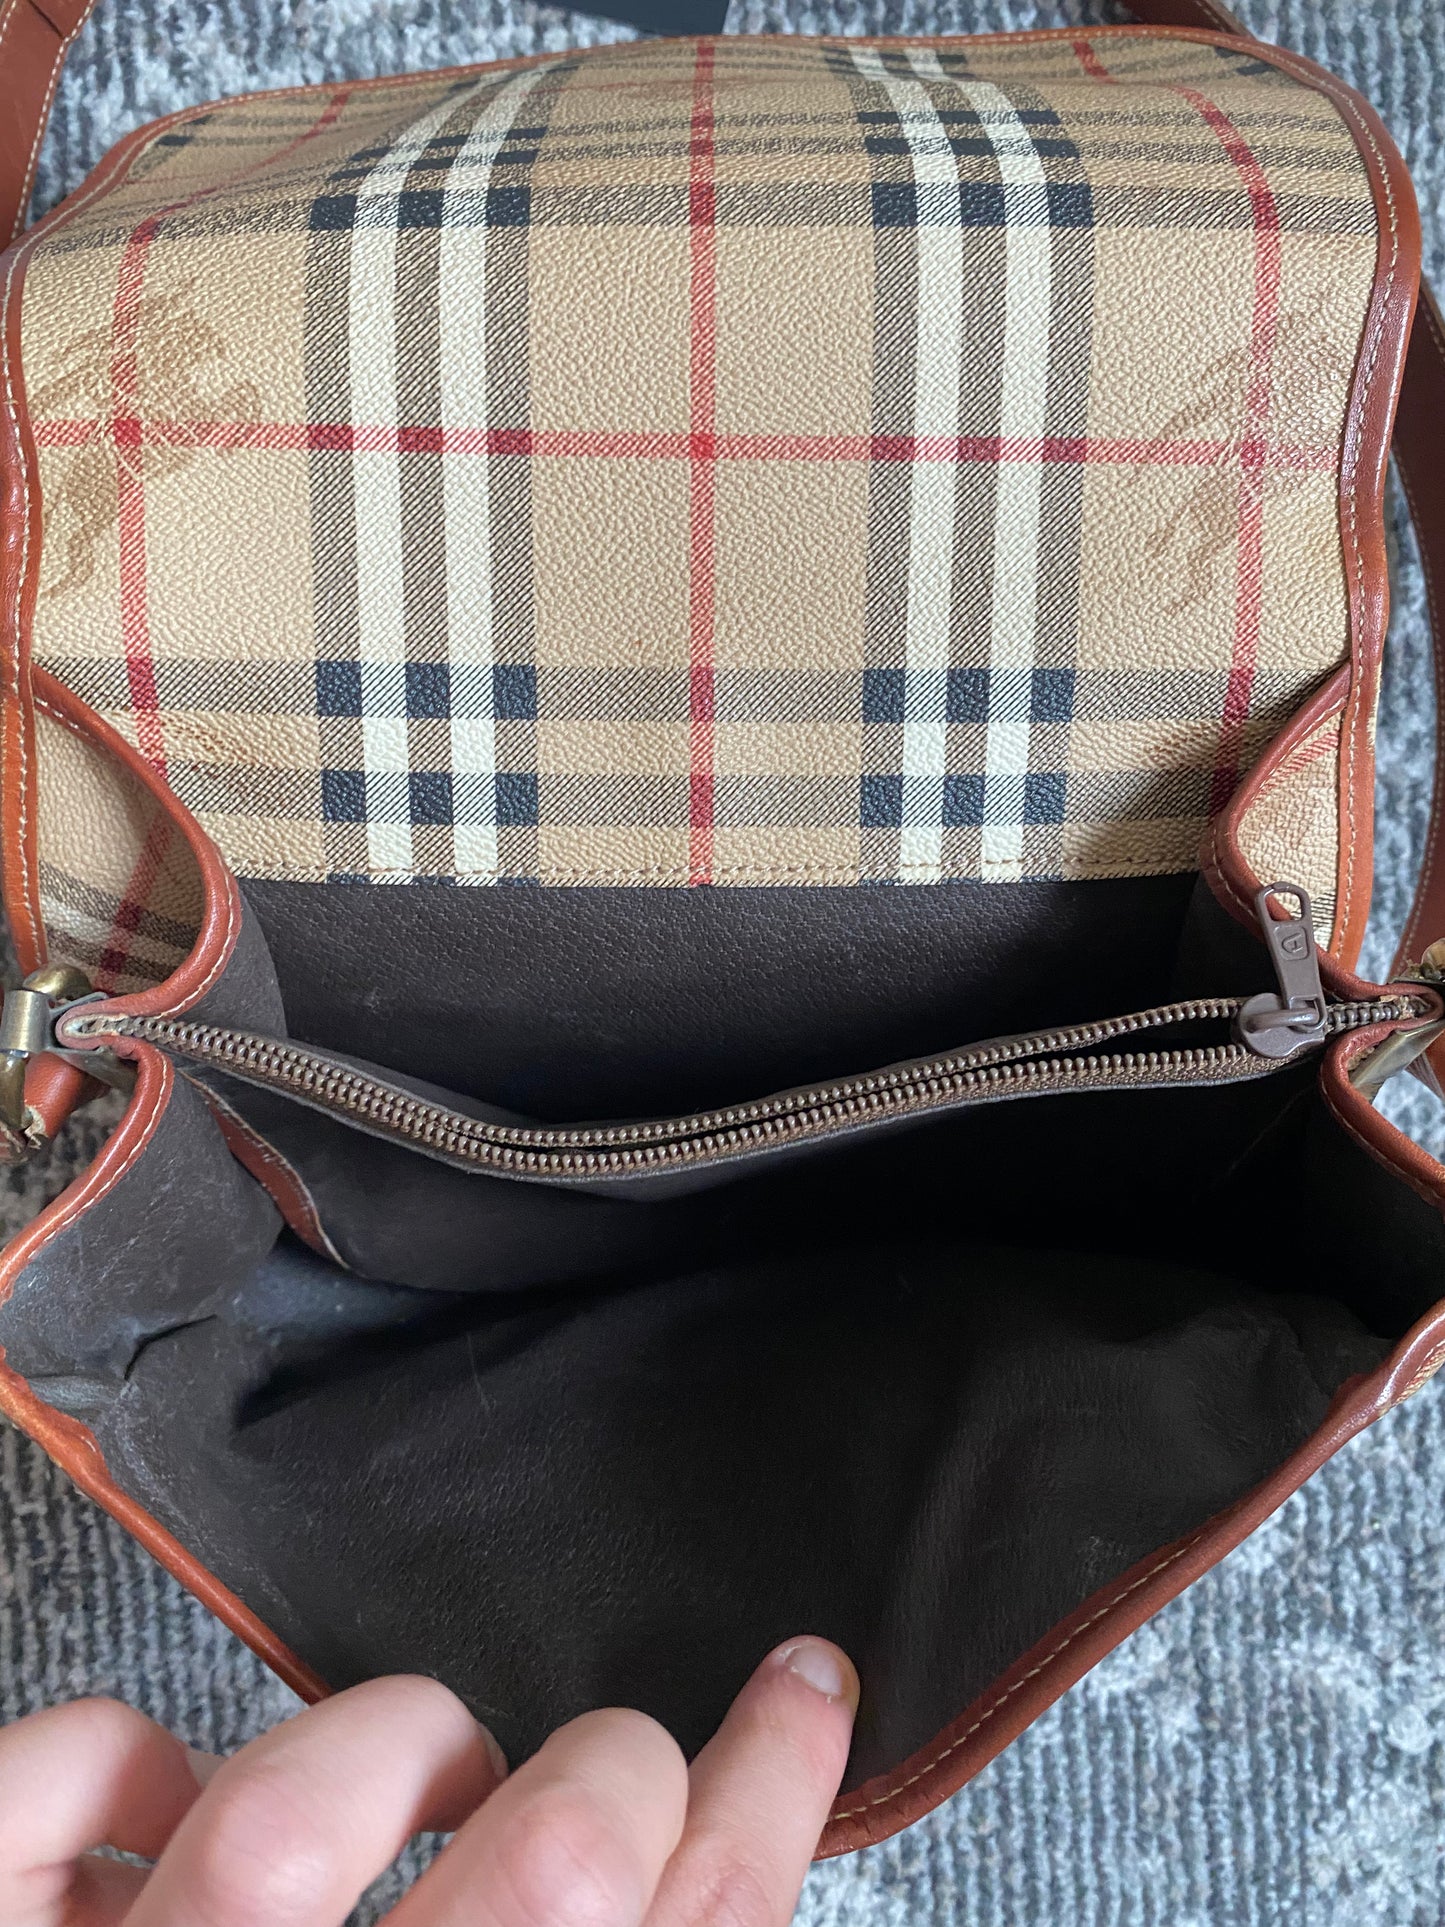 Burberry Messenger Bag